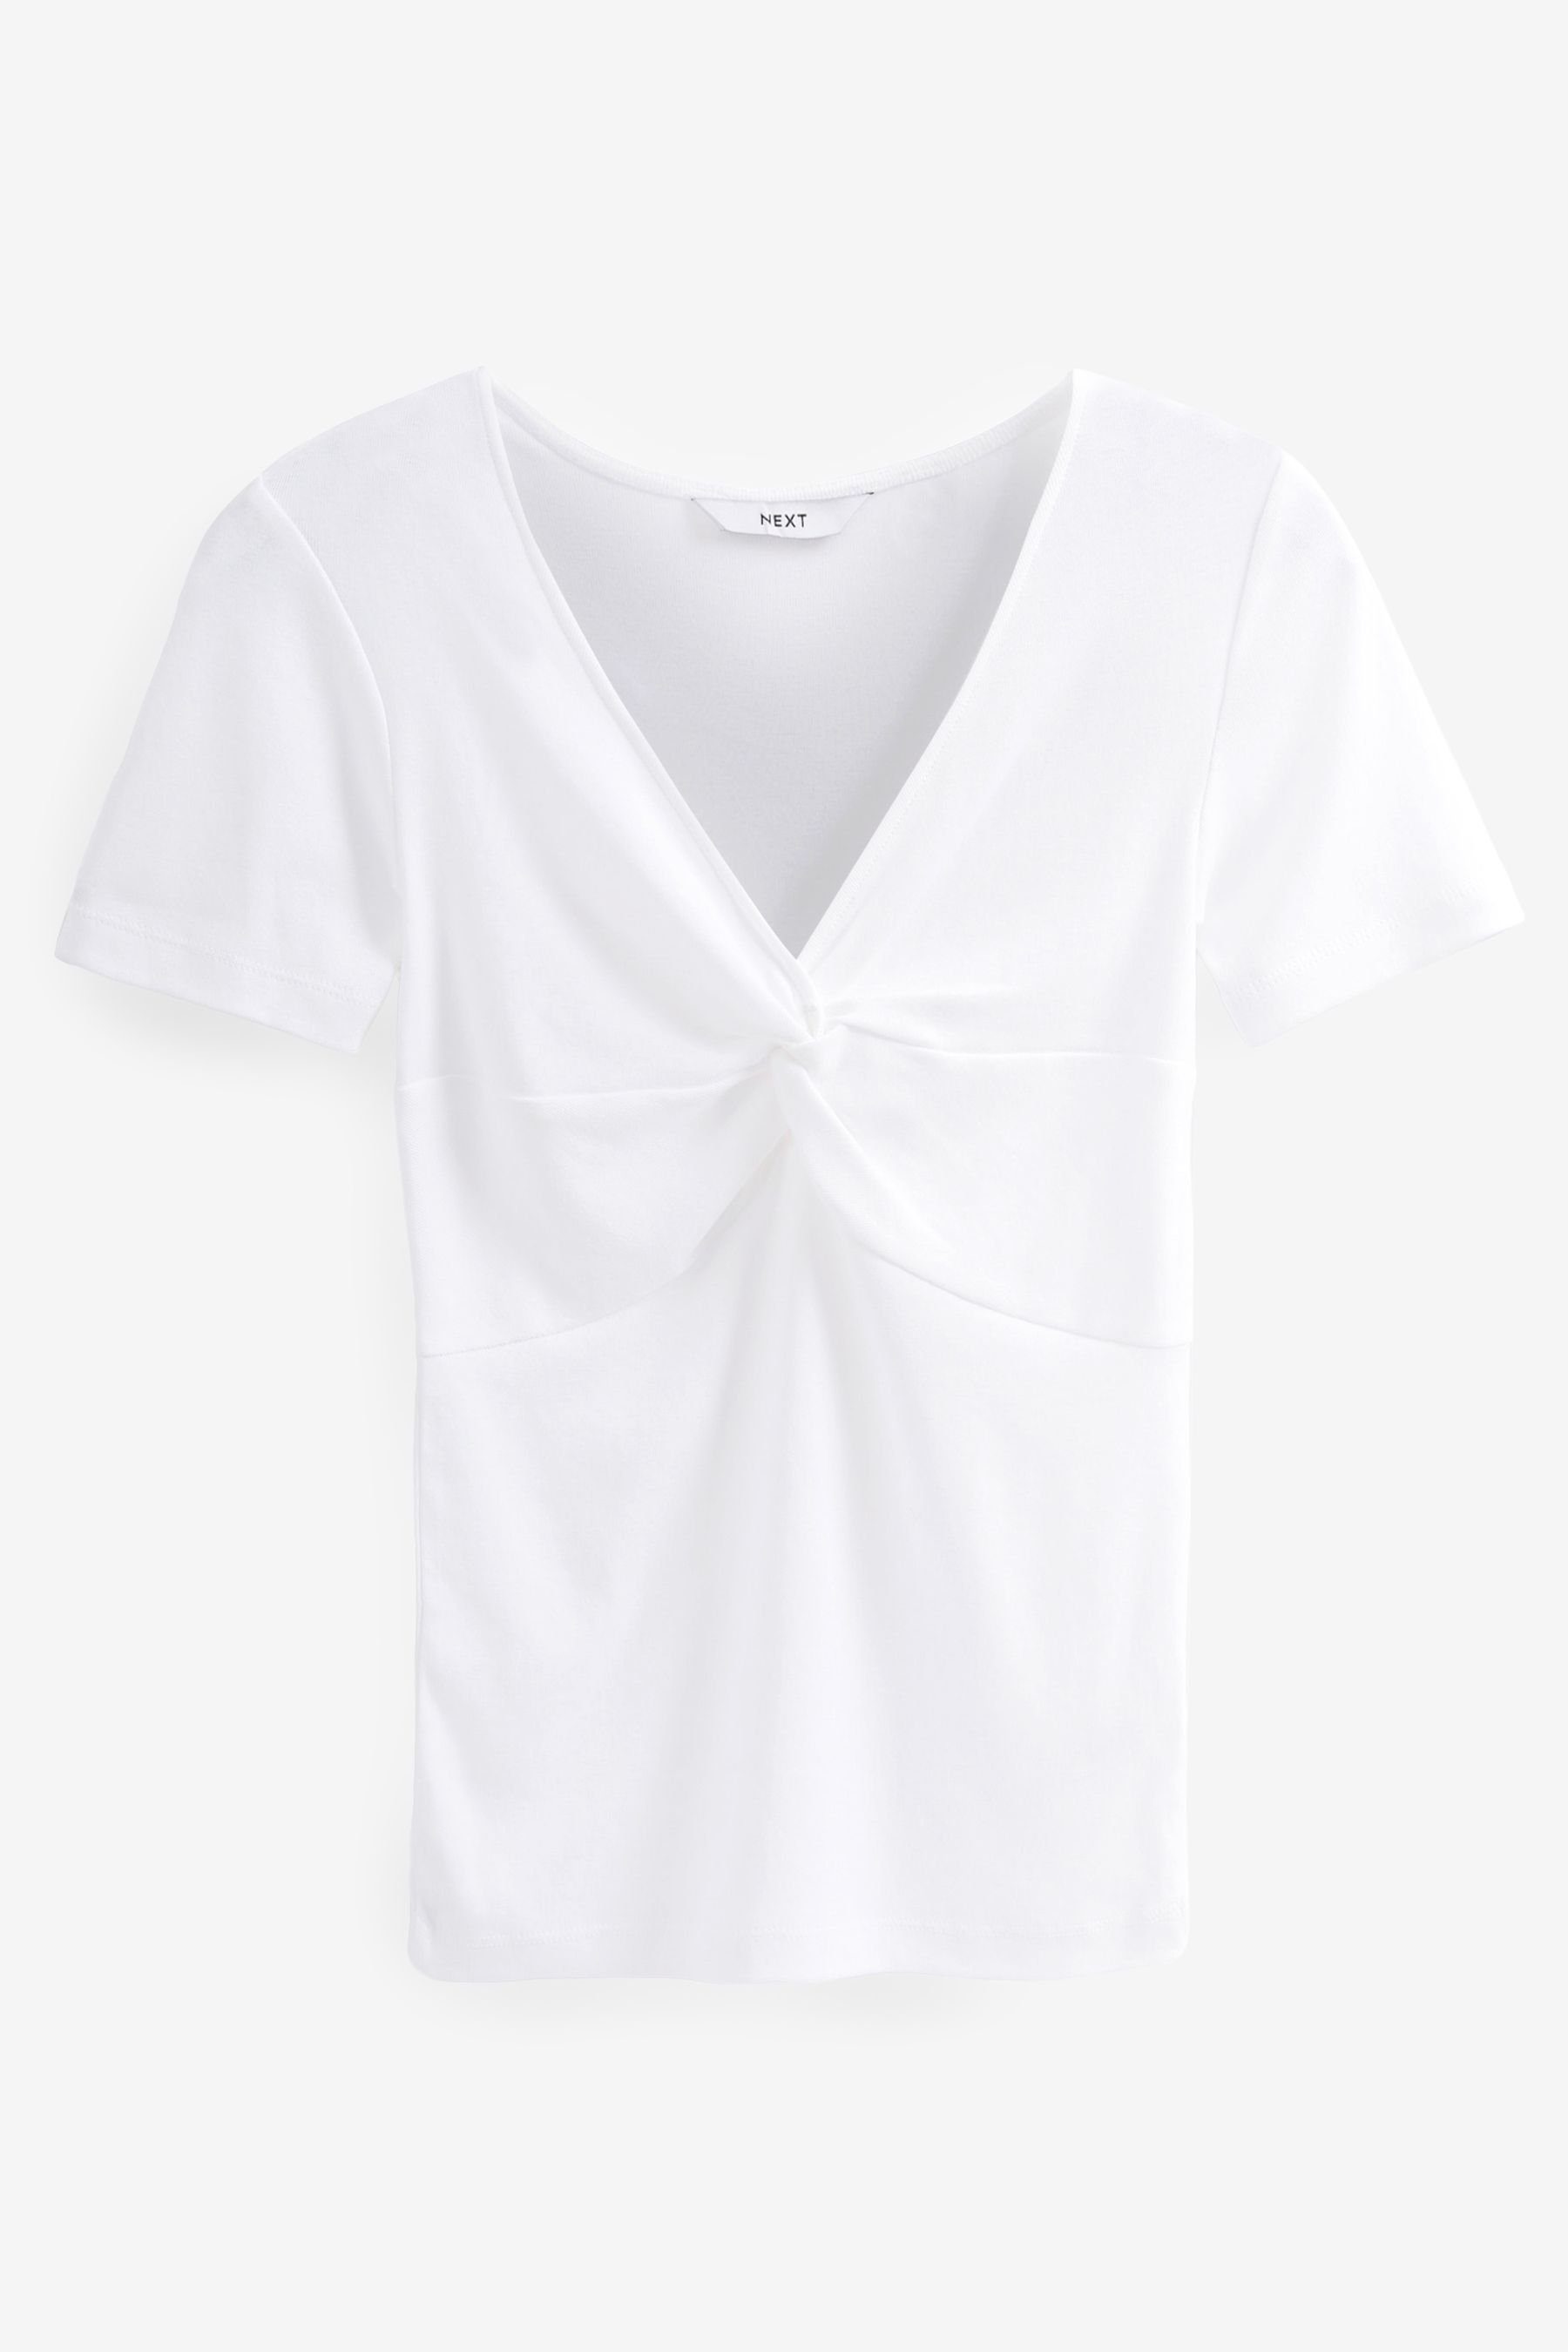 T-Shirt Next White mit Knoten (1-tlg) Shirt Langärmliges